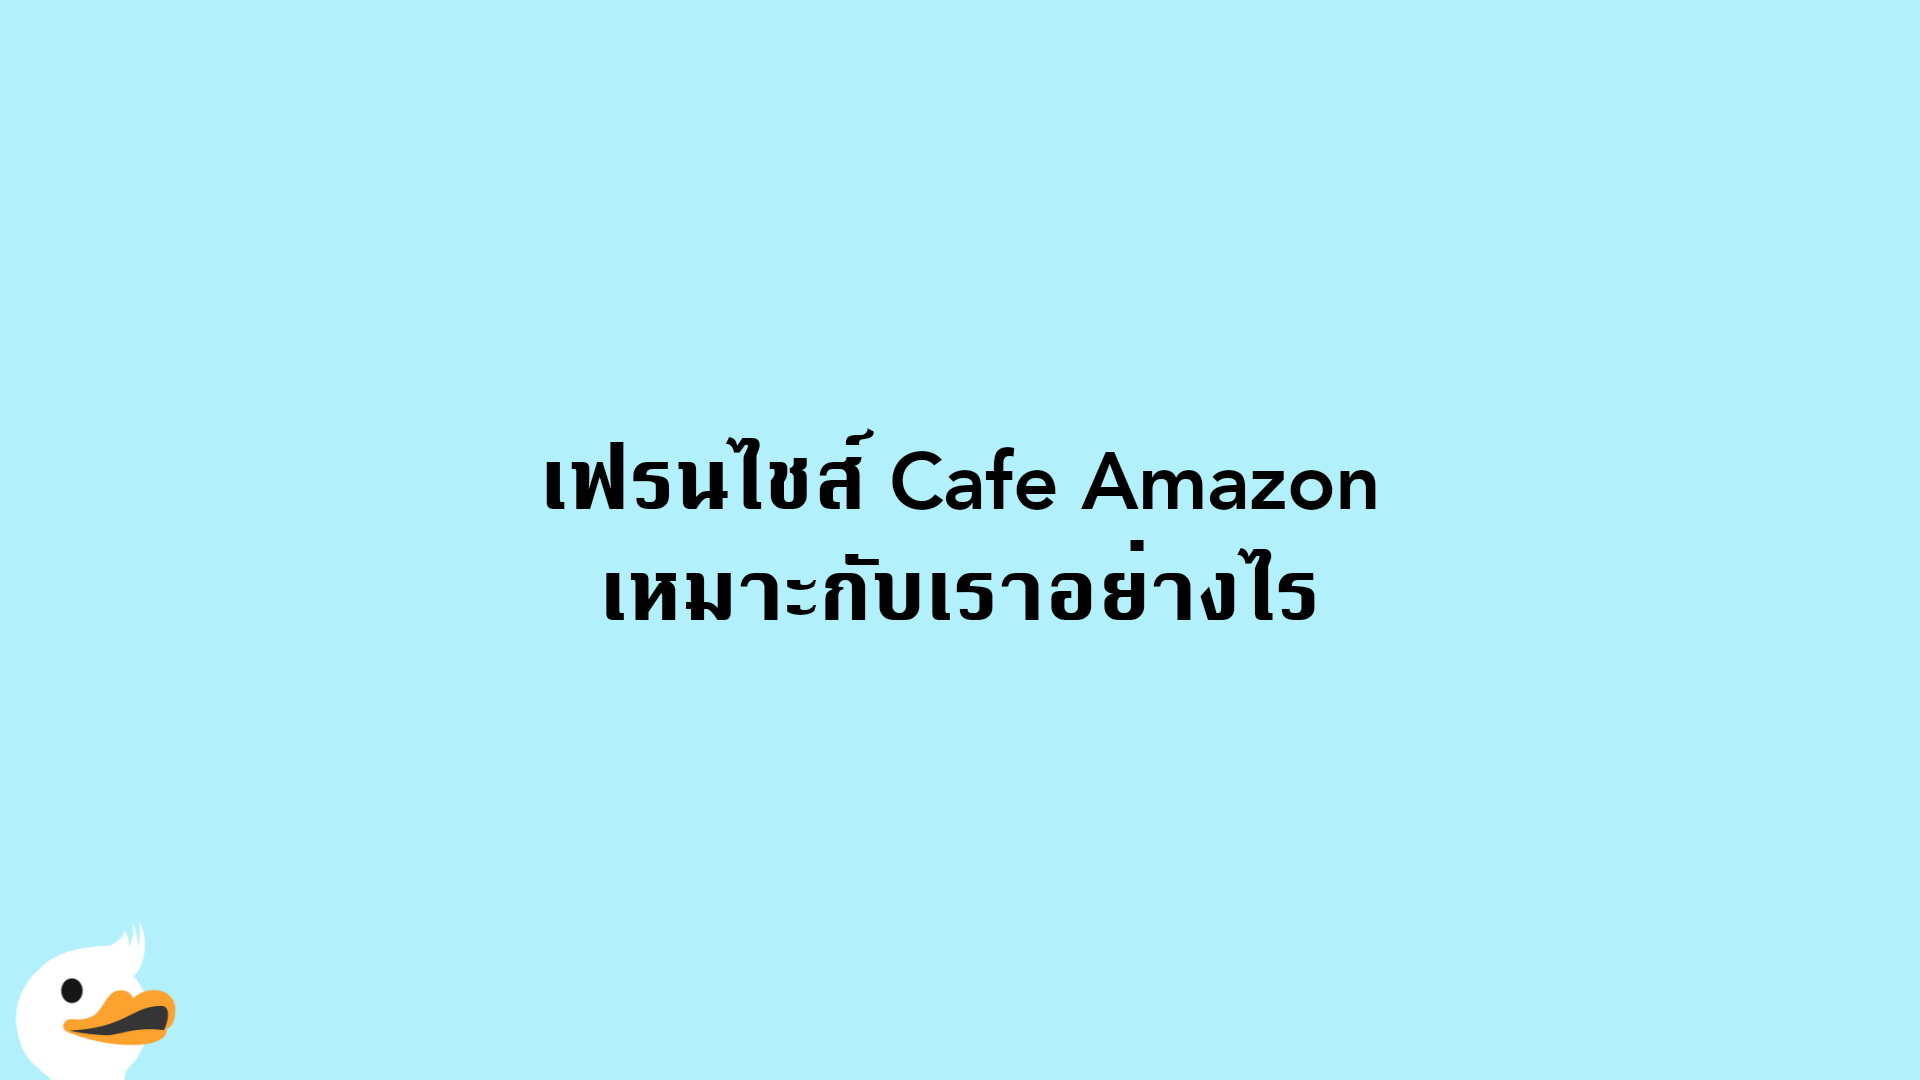 เฟรนไชส์ Cafe Amazon เหมาะกับเราอย่างไร